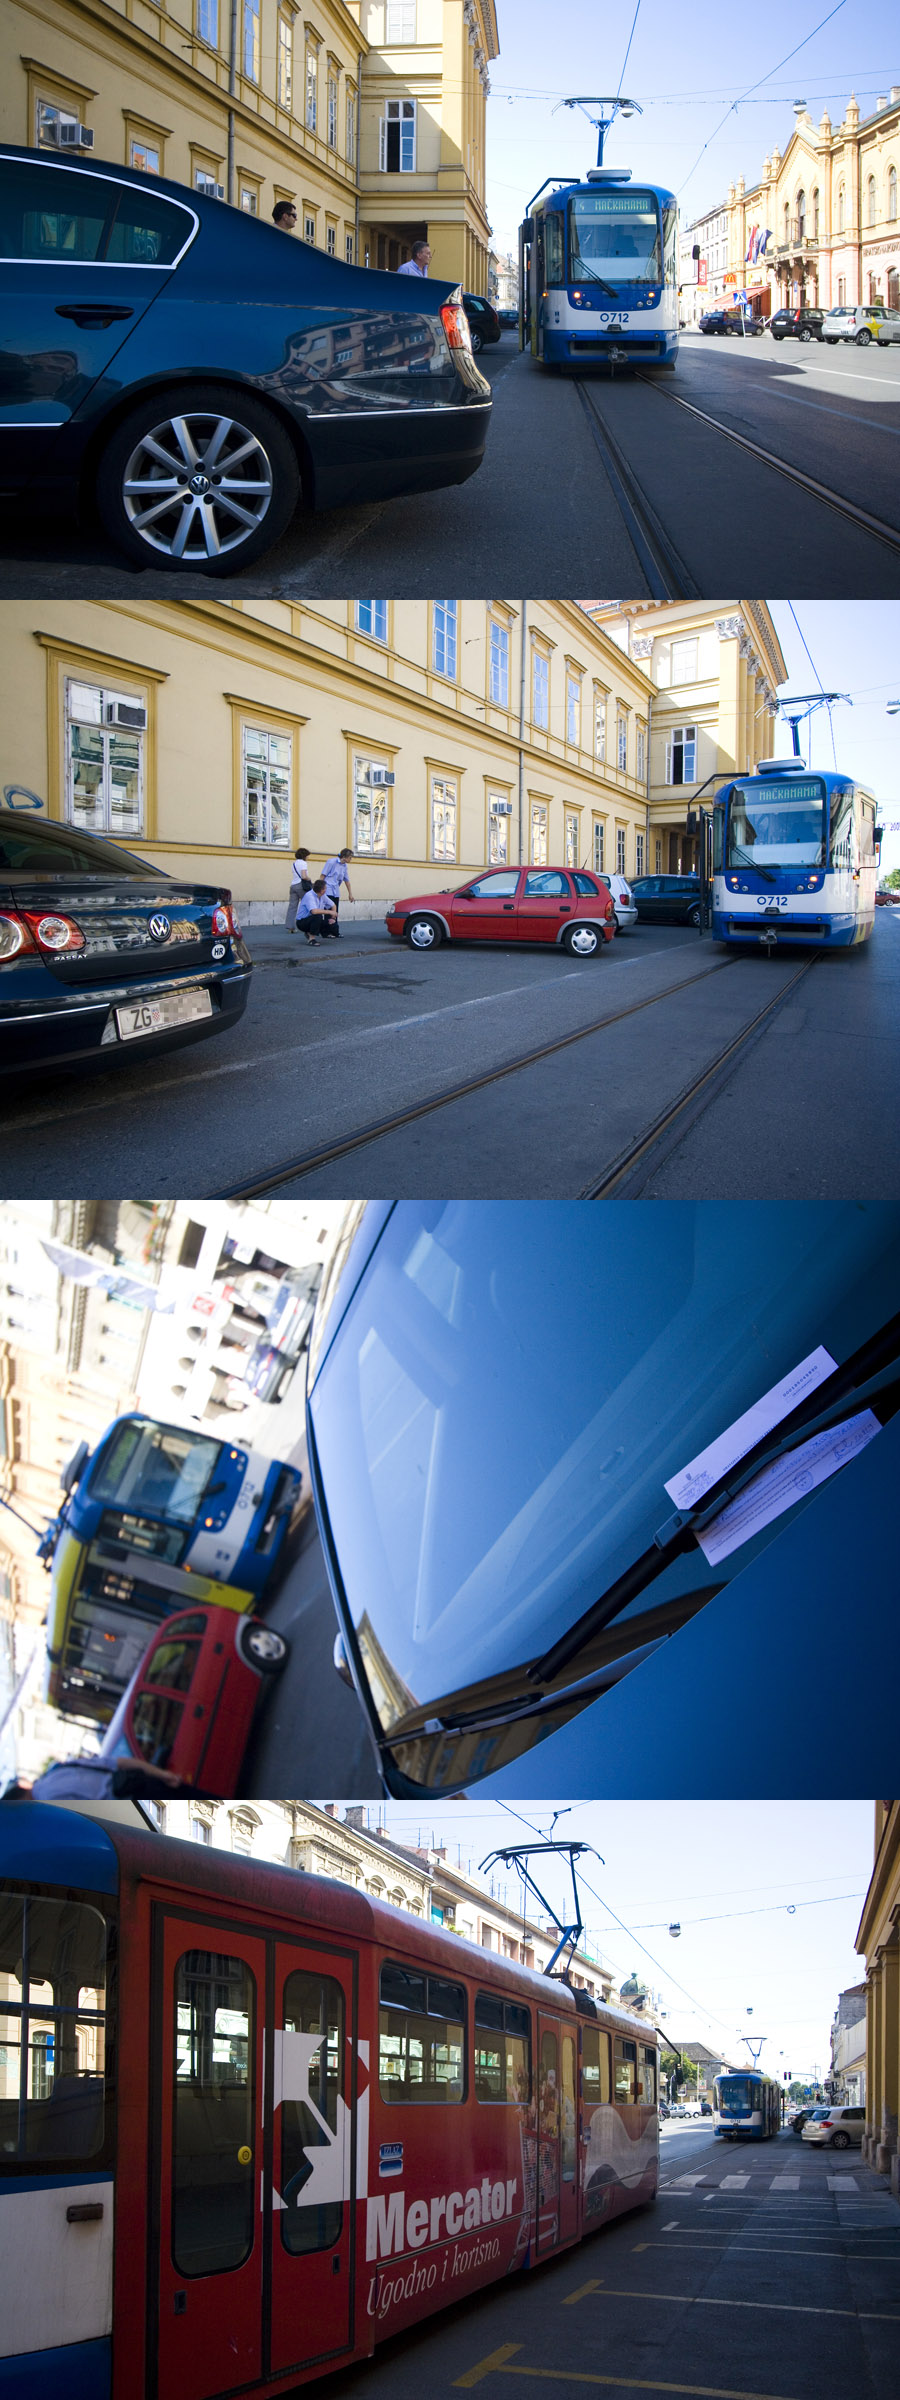 Zastoj tramvaja

Juer oko 15.30 sati, u upanijskoj ulici, dolo je do dueg zastoja tramvaja zbog nepropisno parkiranog automobila zagrebakih registracija.

Foto: Daniel Antunovi

Kljune rijei: zastoj promet tramvaj 